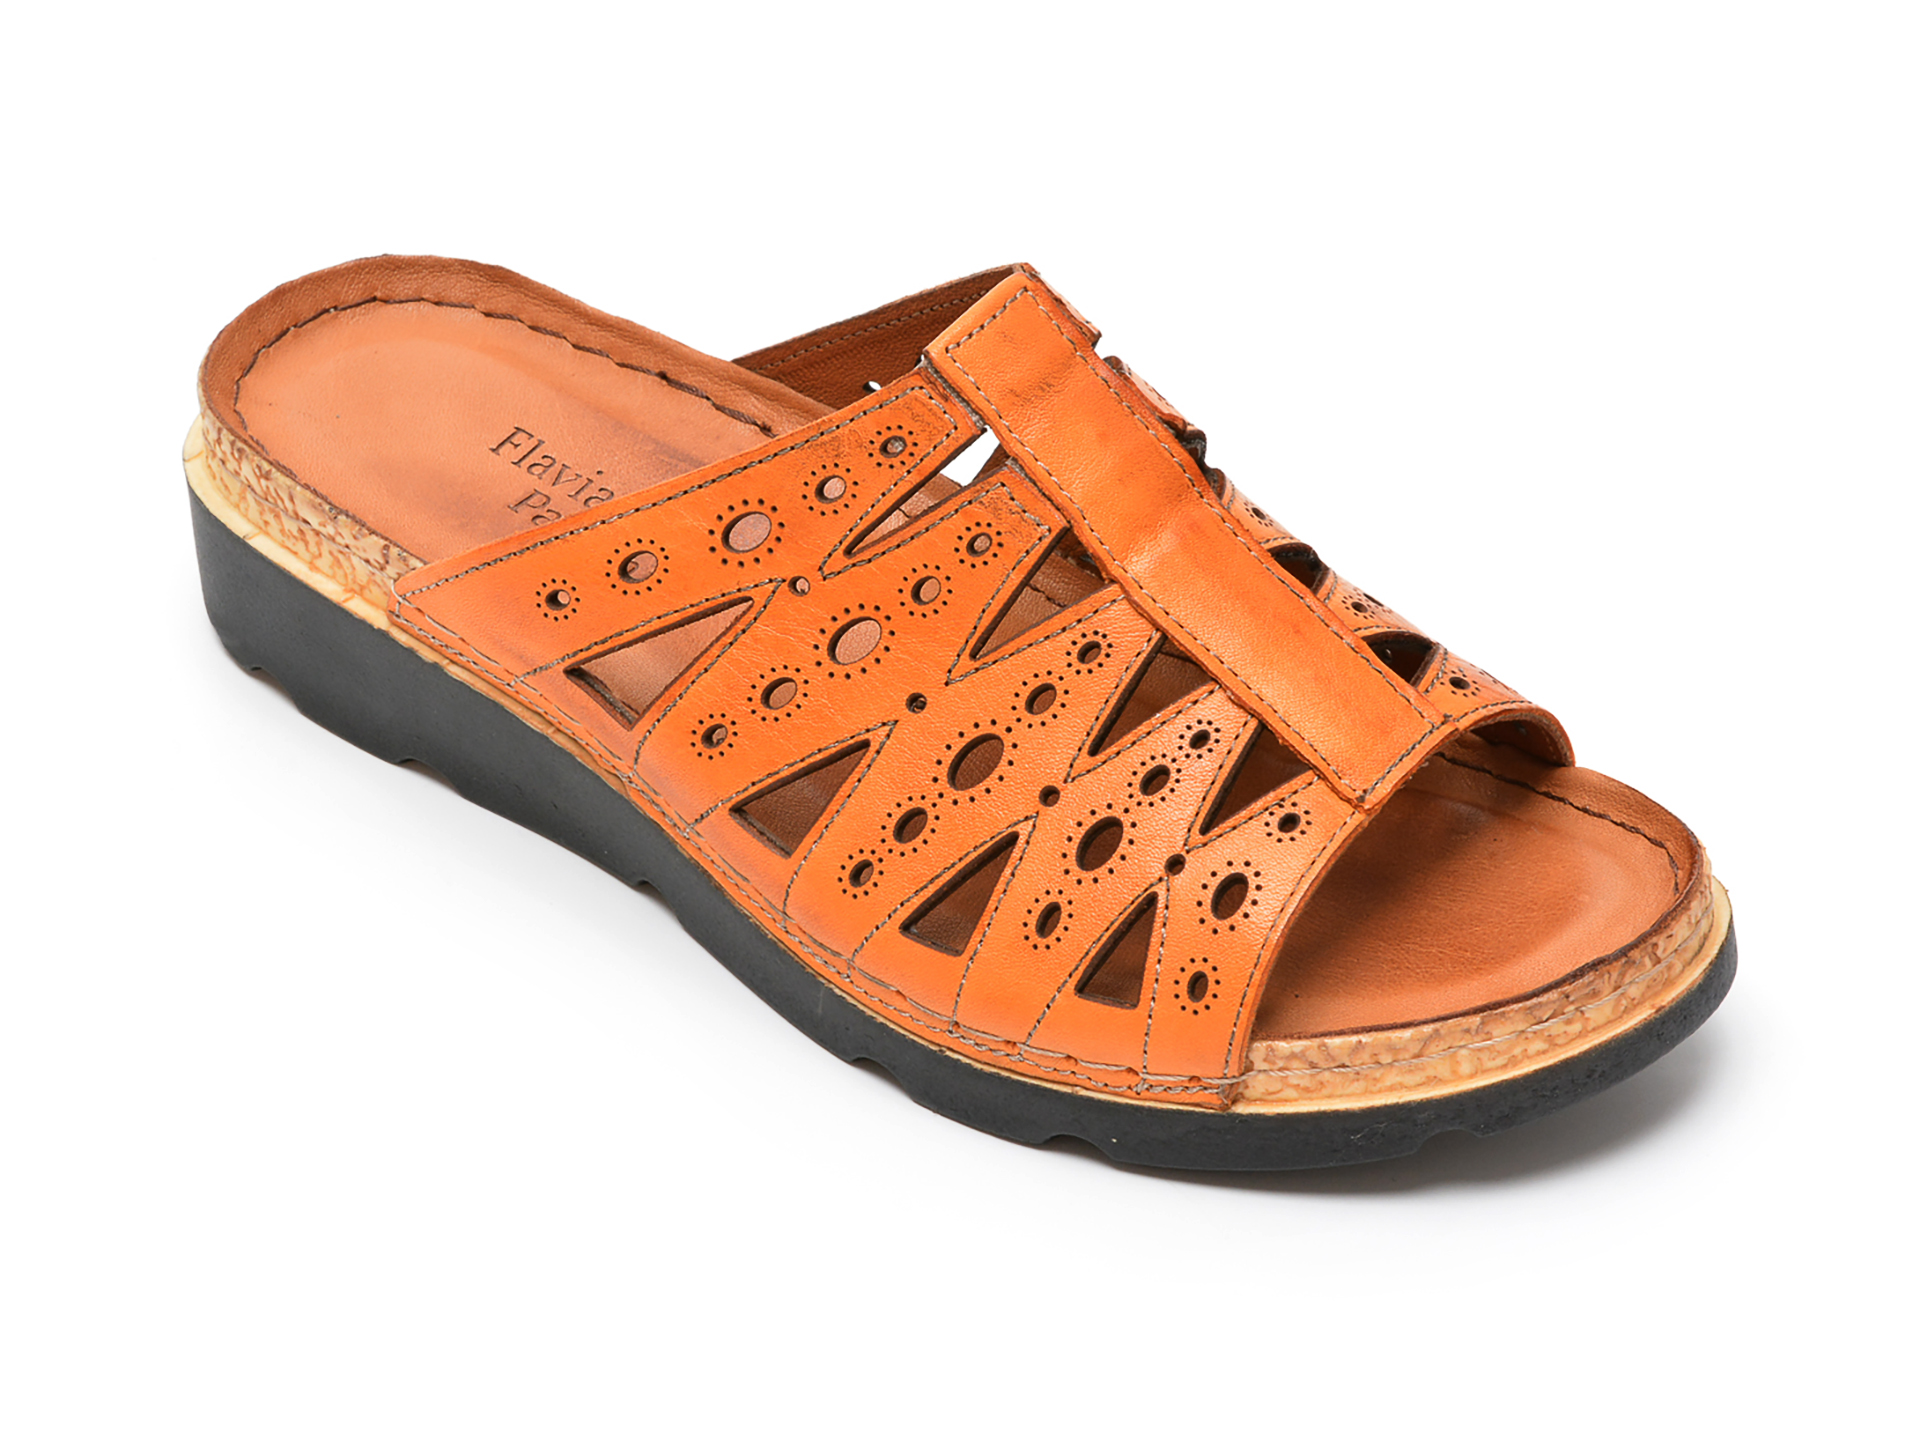 Papuci FLAVIA PASSINI portocalii, 1262, din piele naturala